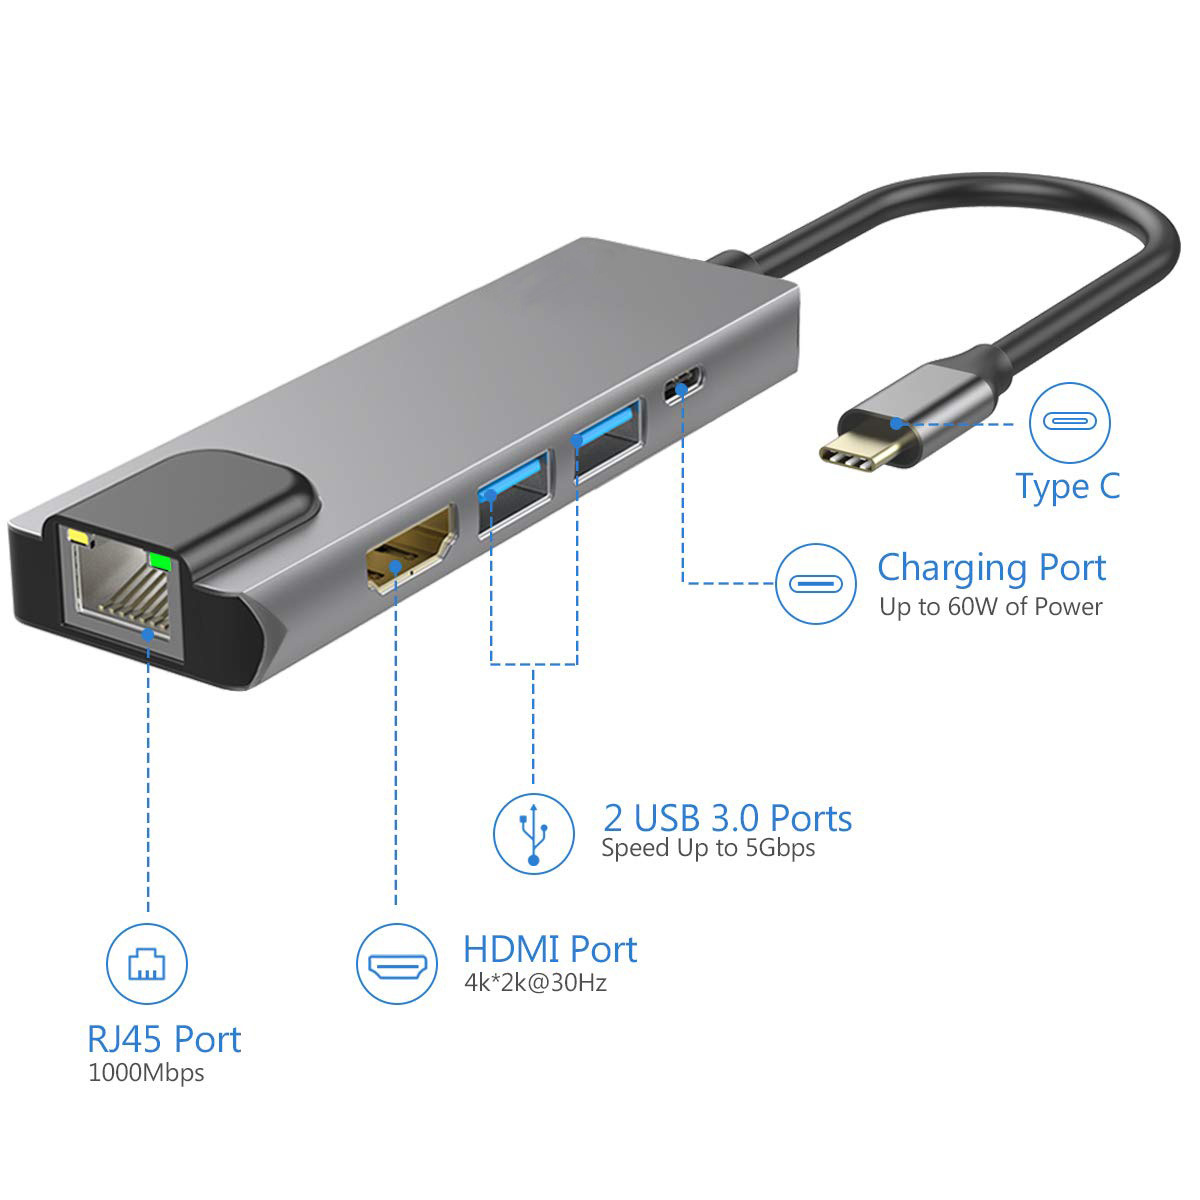 USB-C till HDMI/2xUSB3.0/USB3.1/Ethernet, grå